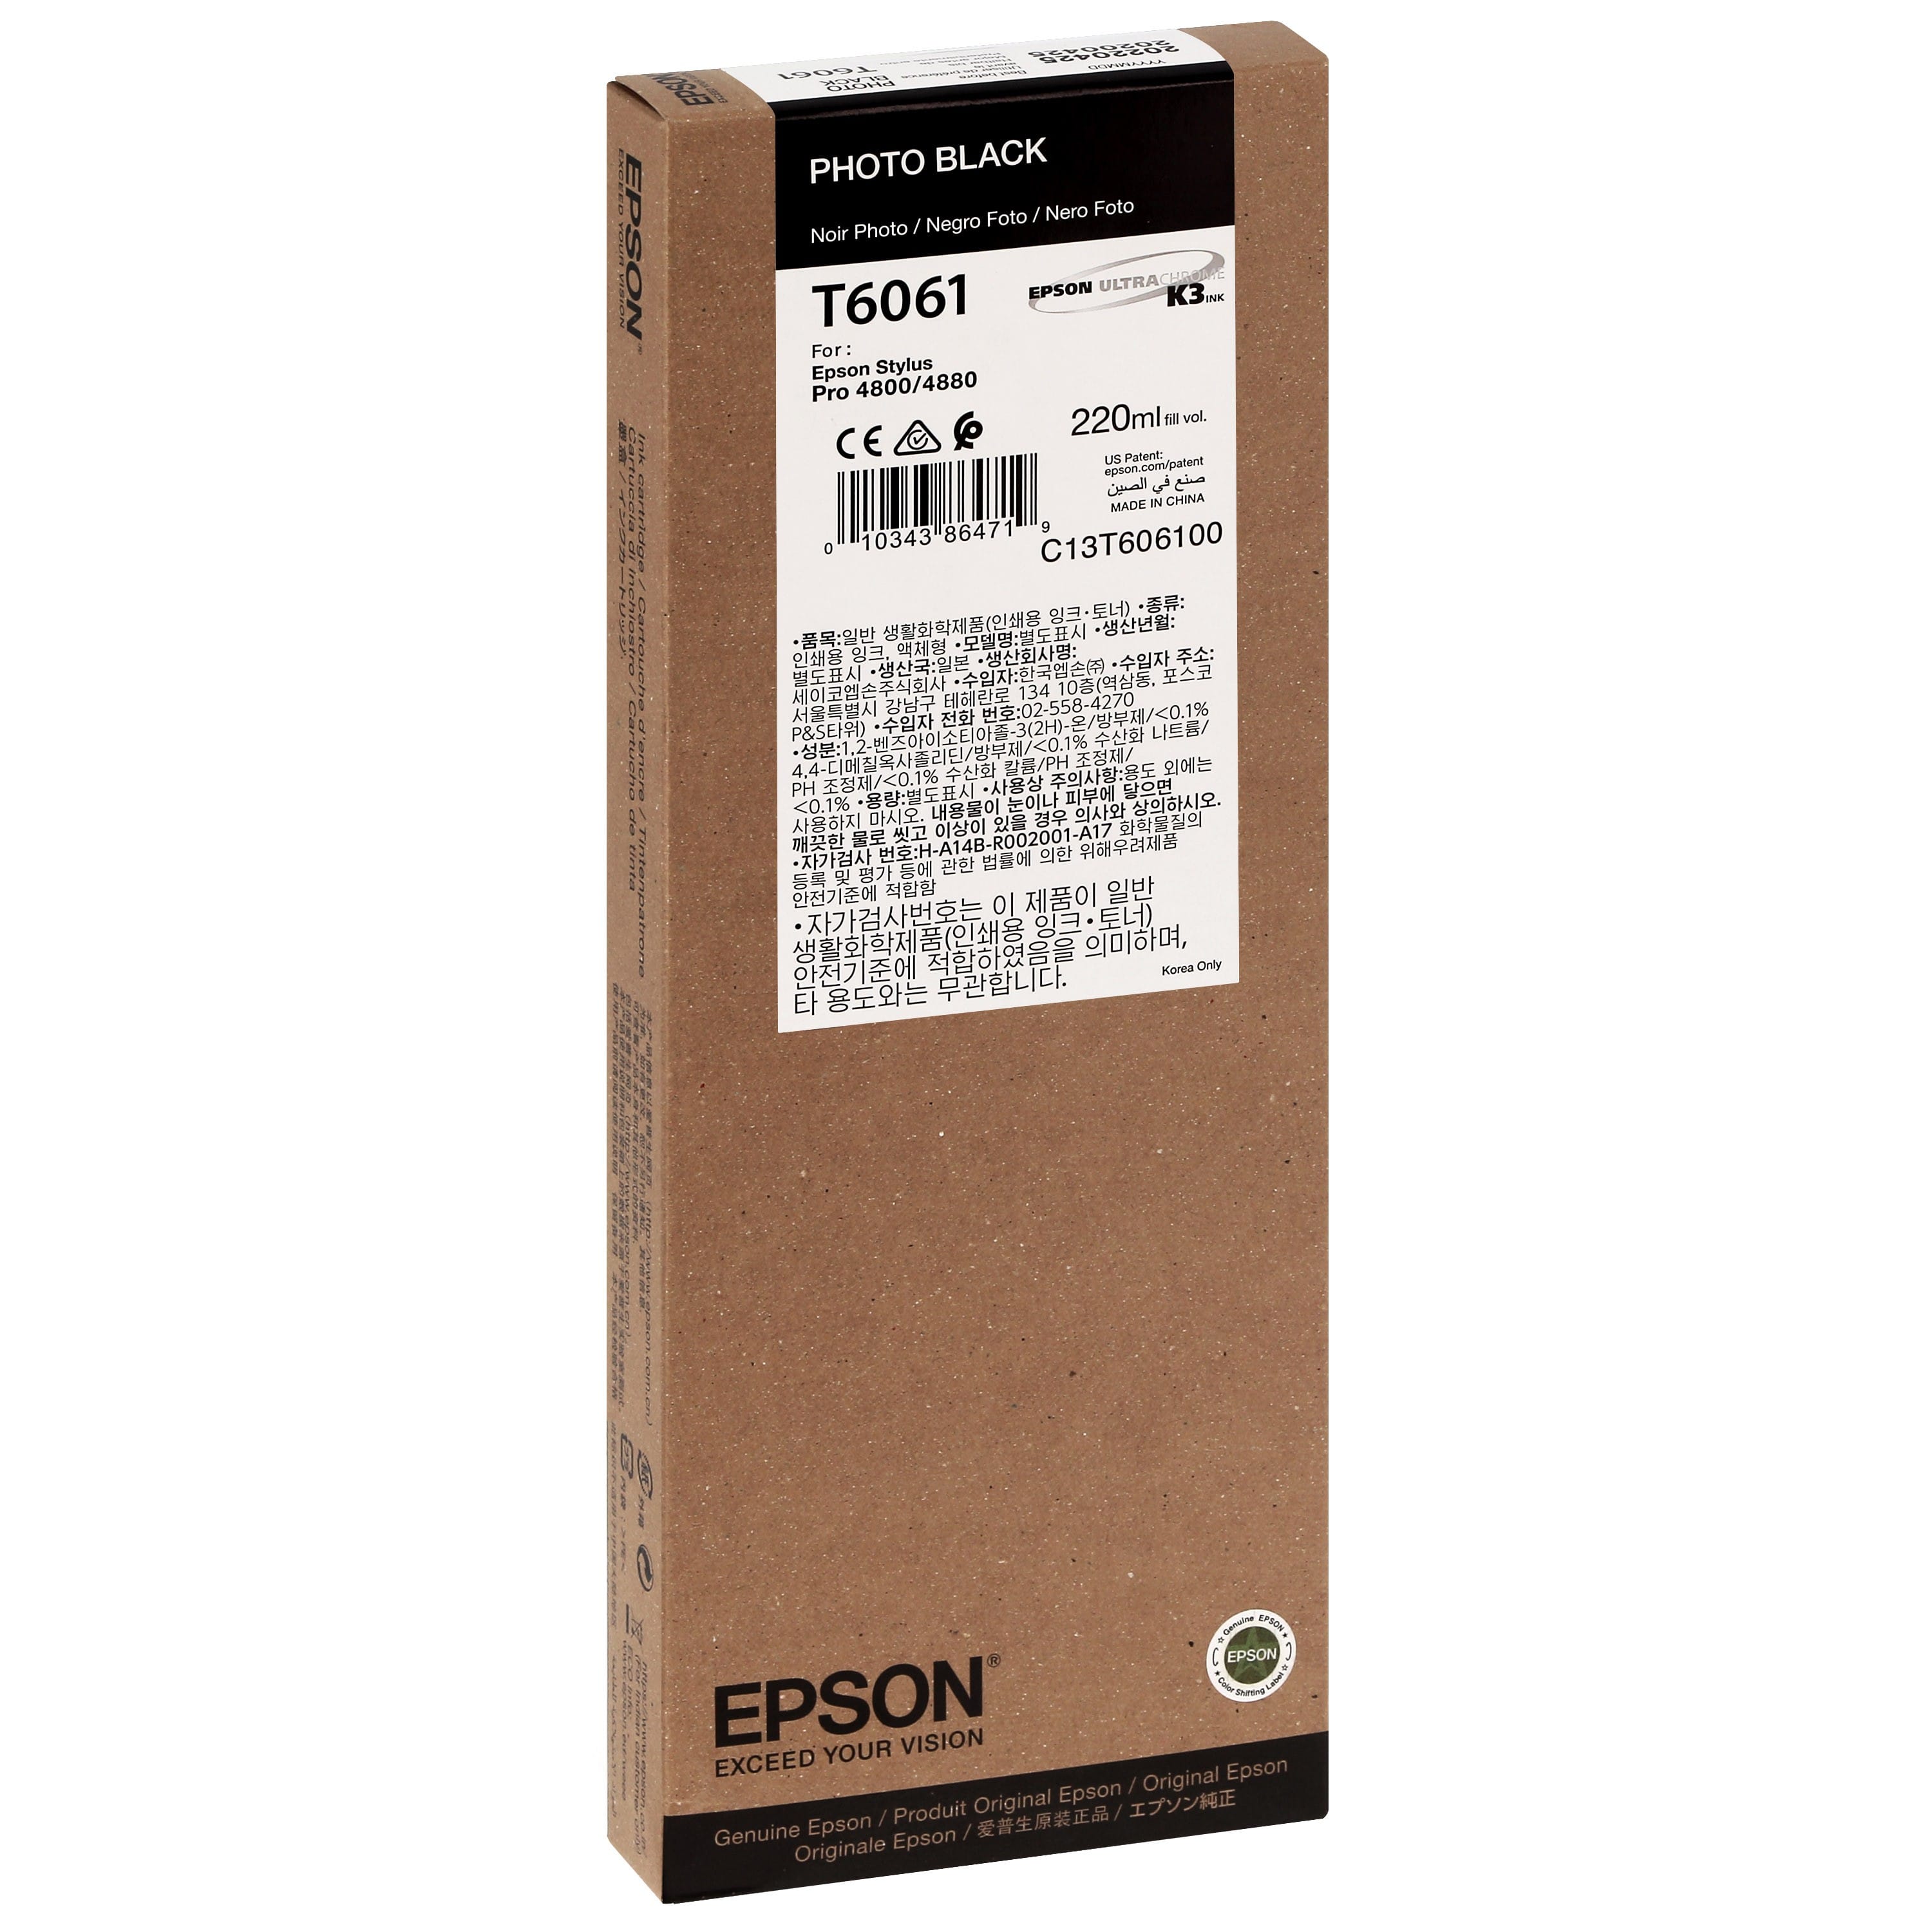 EPSON - Cartouche d'encre traceur T6061 Pour imprimante 4800/4880 Noir Photo - 220ml